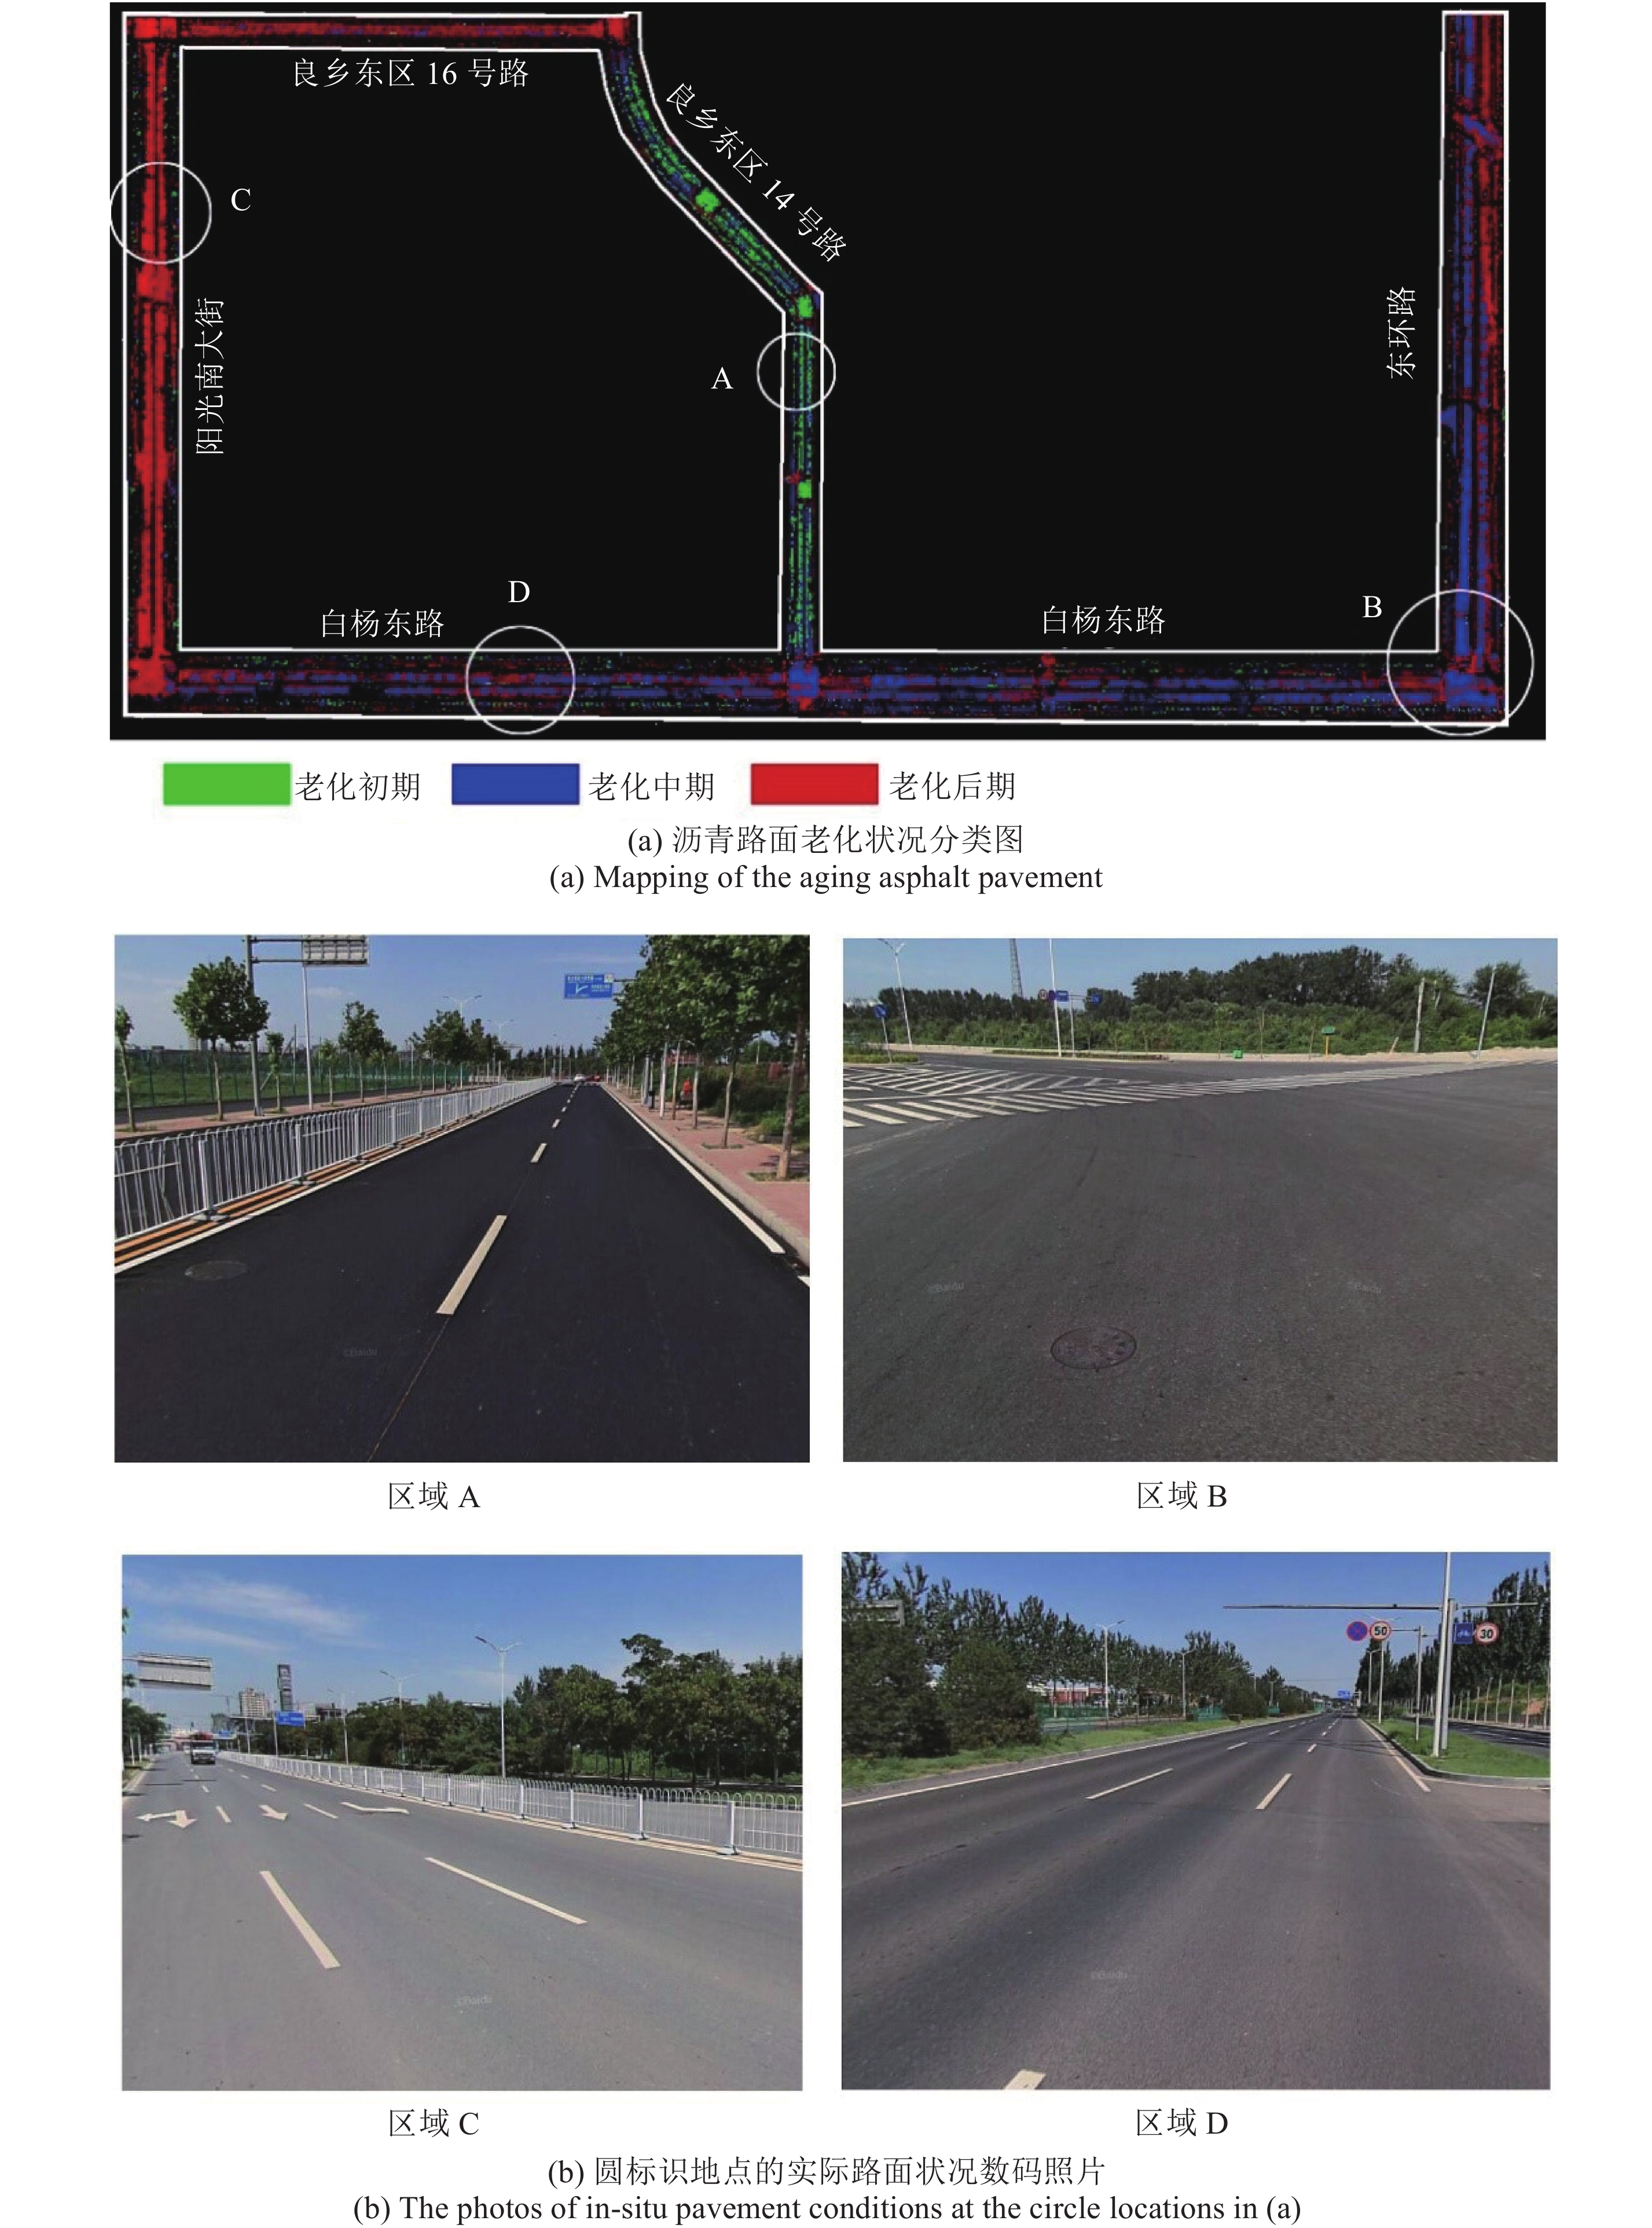 数字孪生智慧高速三维可视化云控平台解决方案_高速公路项目建设一张图可视化平台解决方案_数维图2D3D前端可视化的博客-CSDN博客